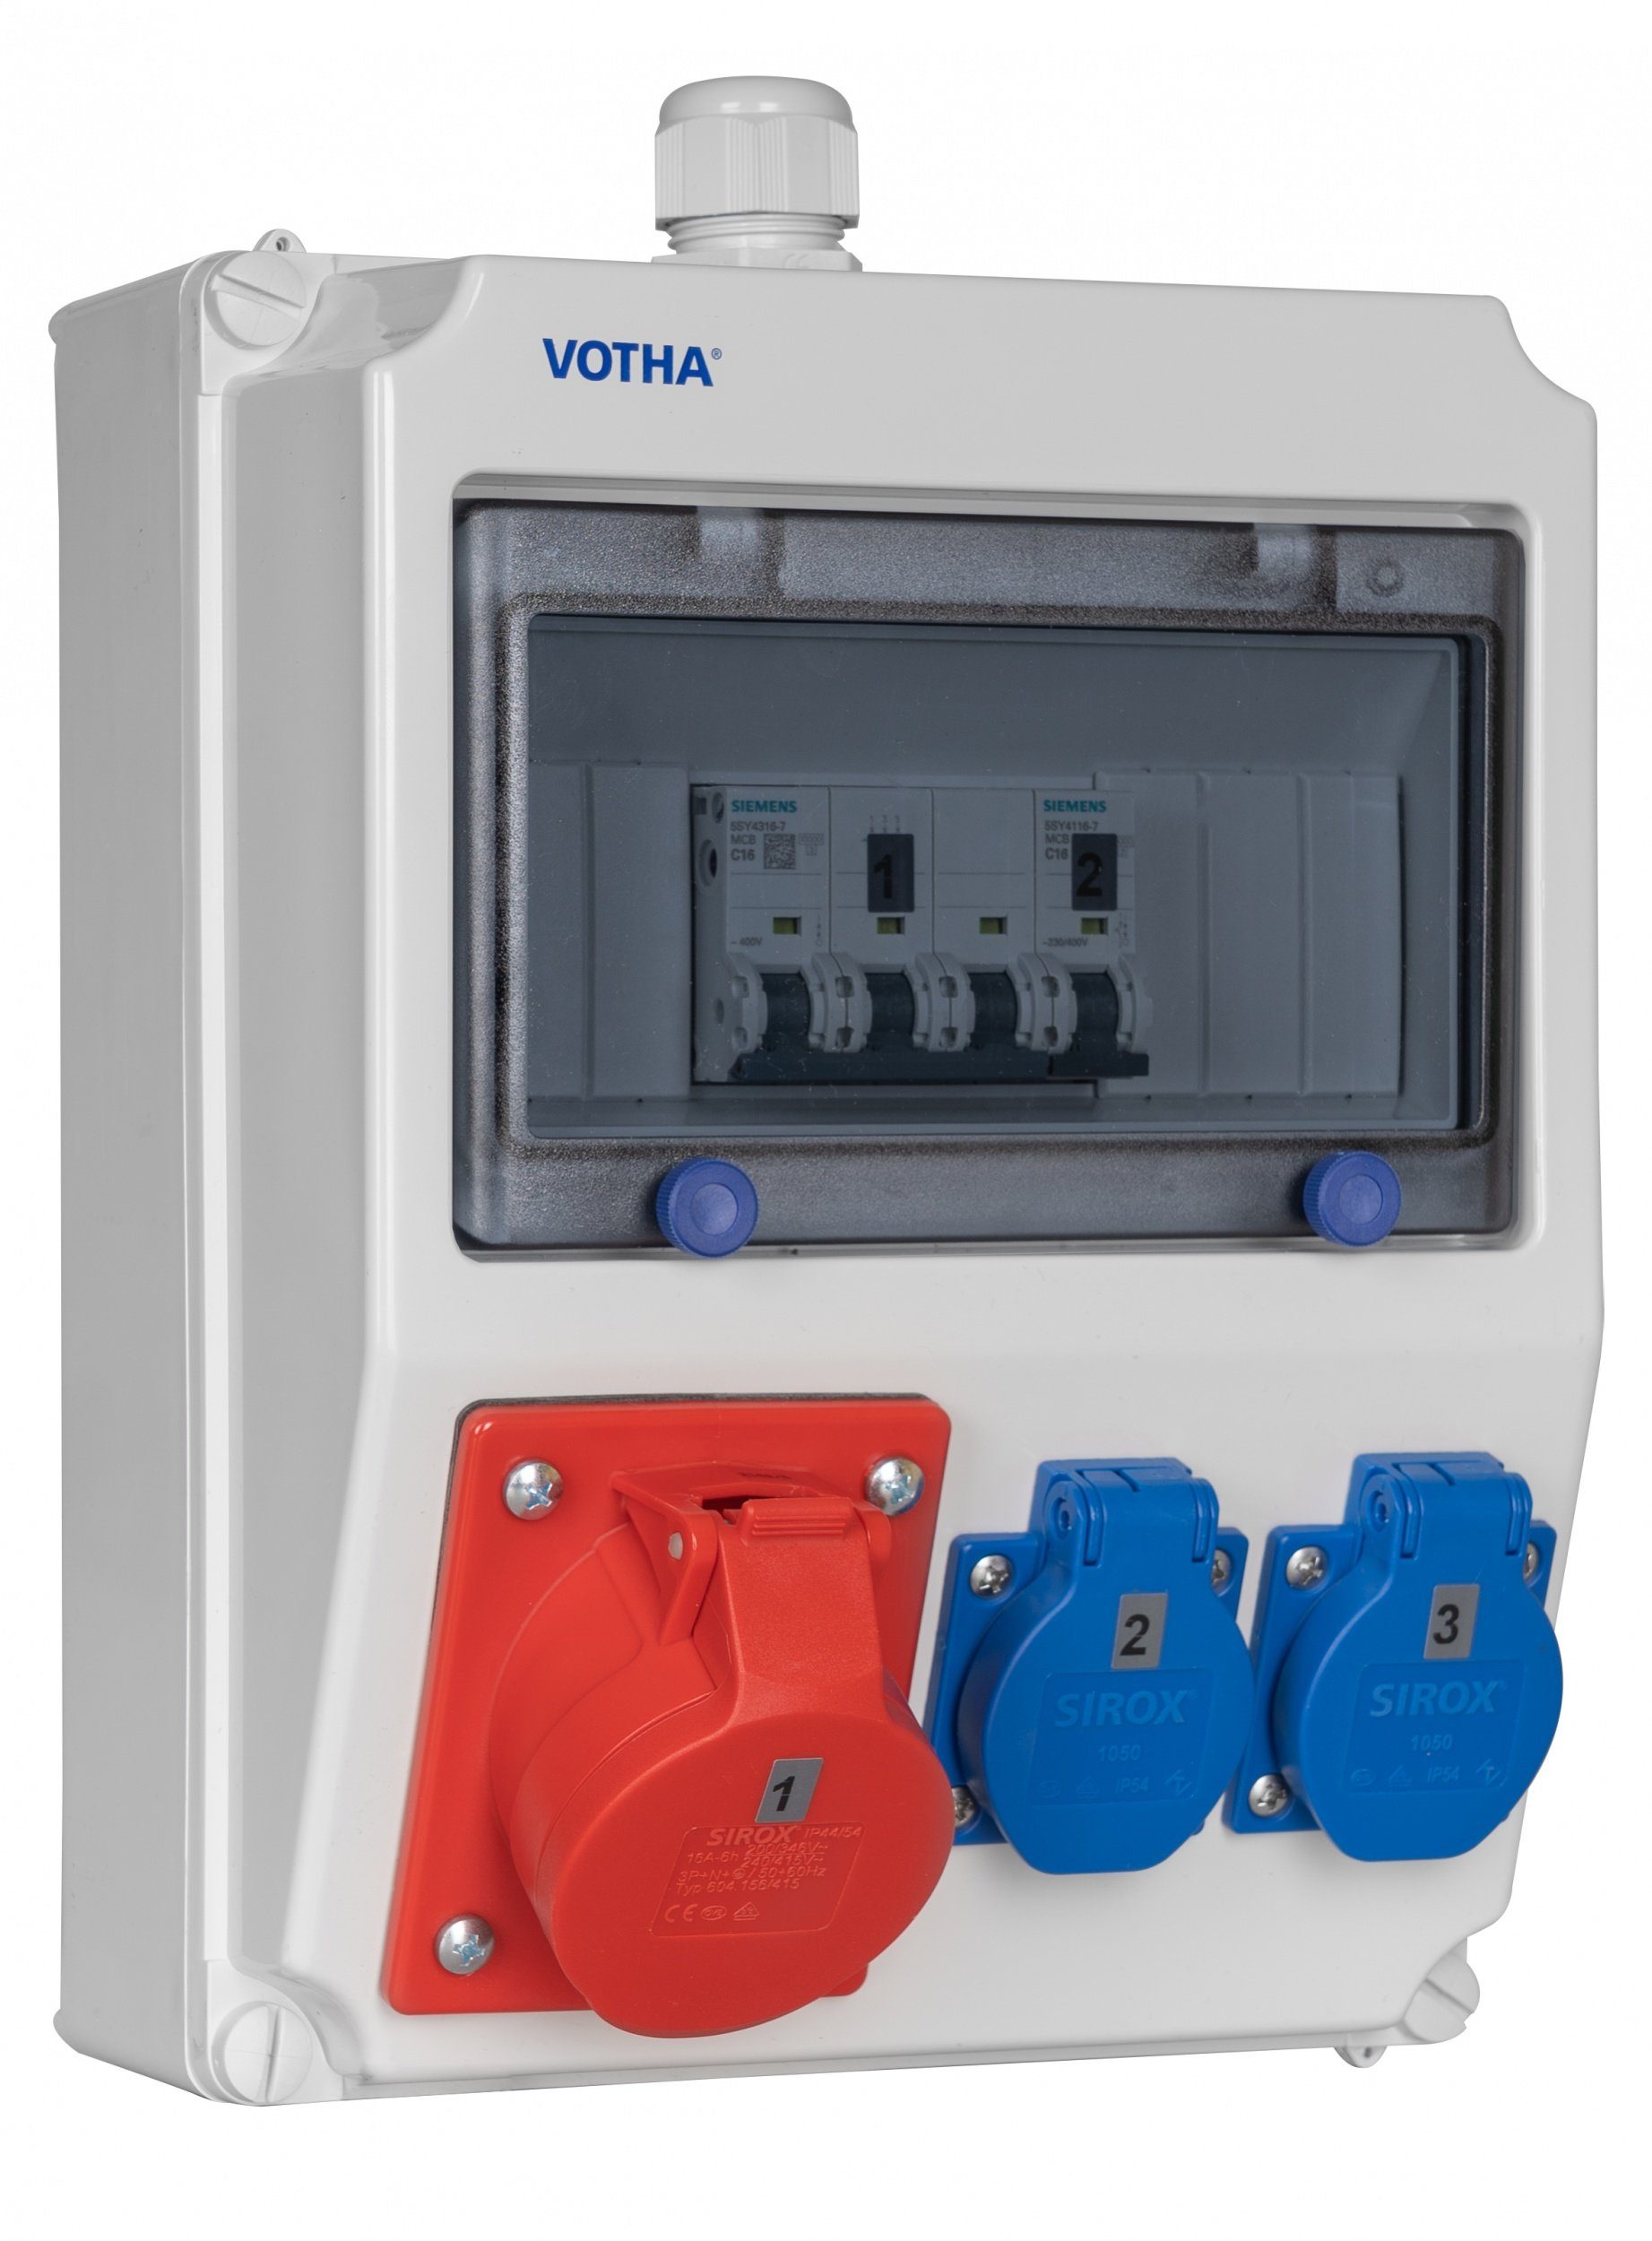 Votha VOTHA® Wandverteiler - verdrahtet "WORMS" ohne FI-Schalter Steckdosenverteiler